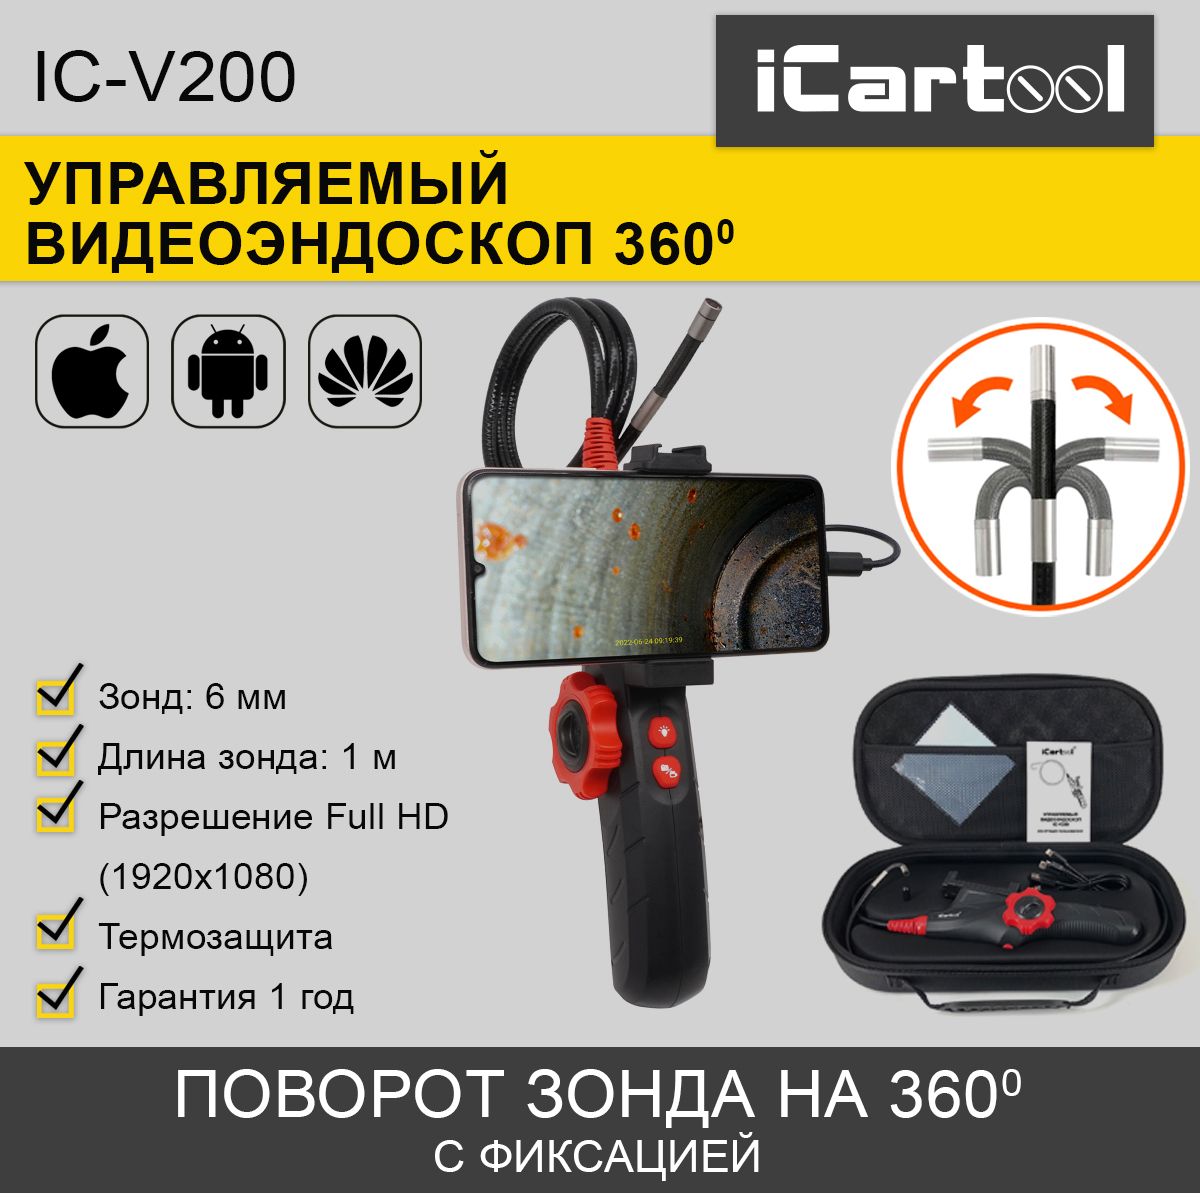 Видеоэндоскоп управляемый iCartool IC-V200 USB, 2Мп, 1920x1080, 1м, 6мм, 360 управляемый видеоэндоскоп icartool